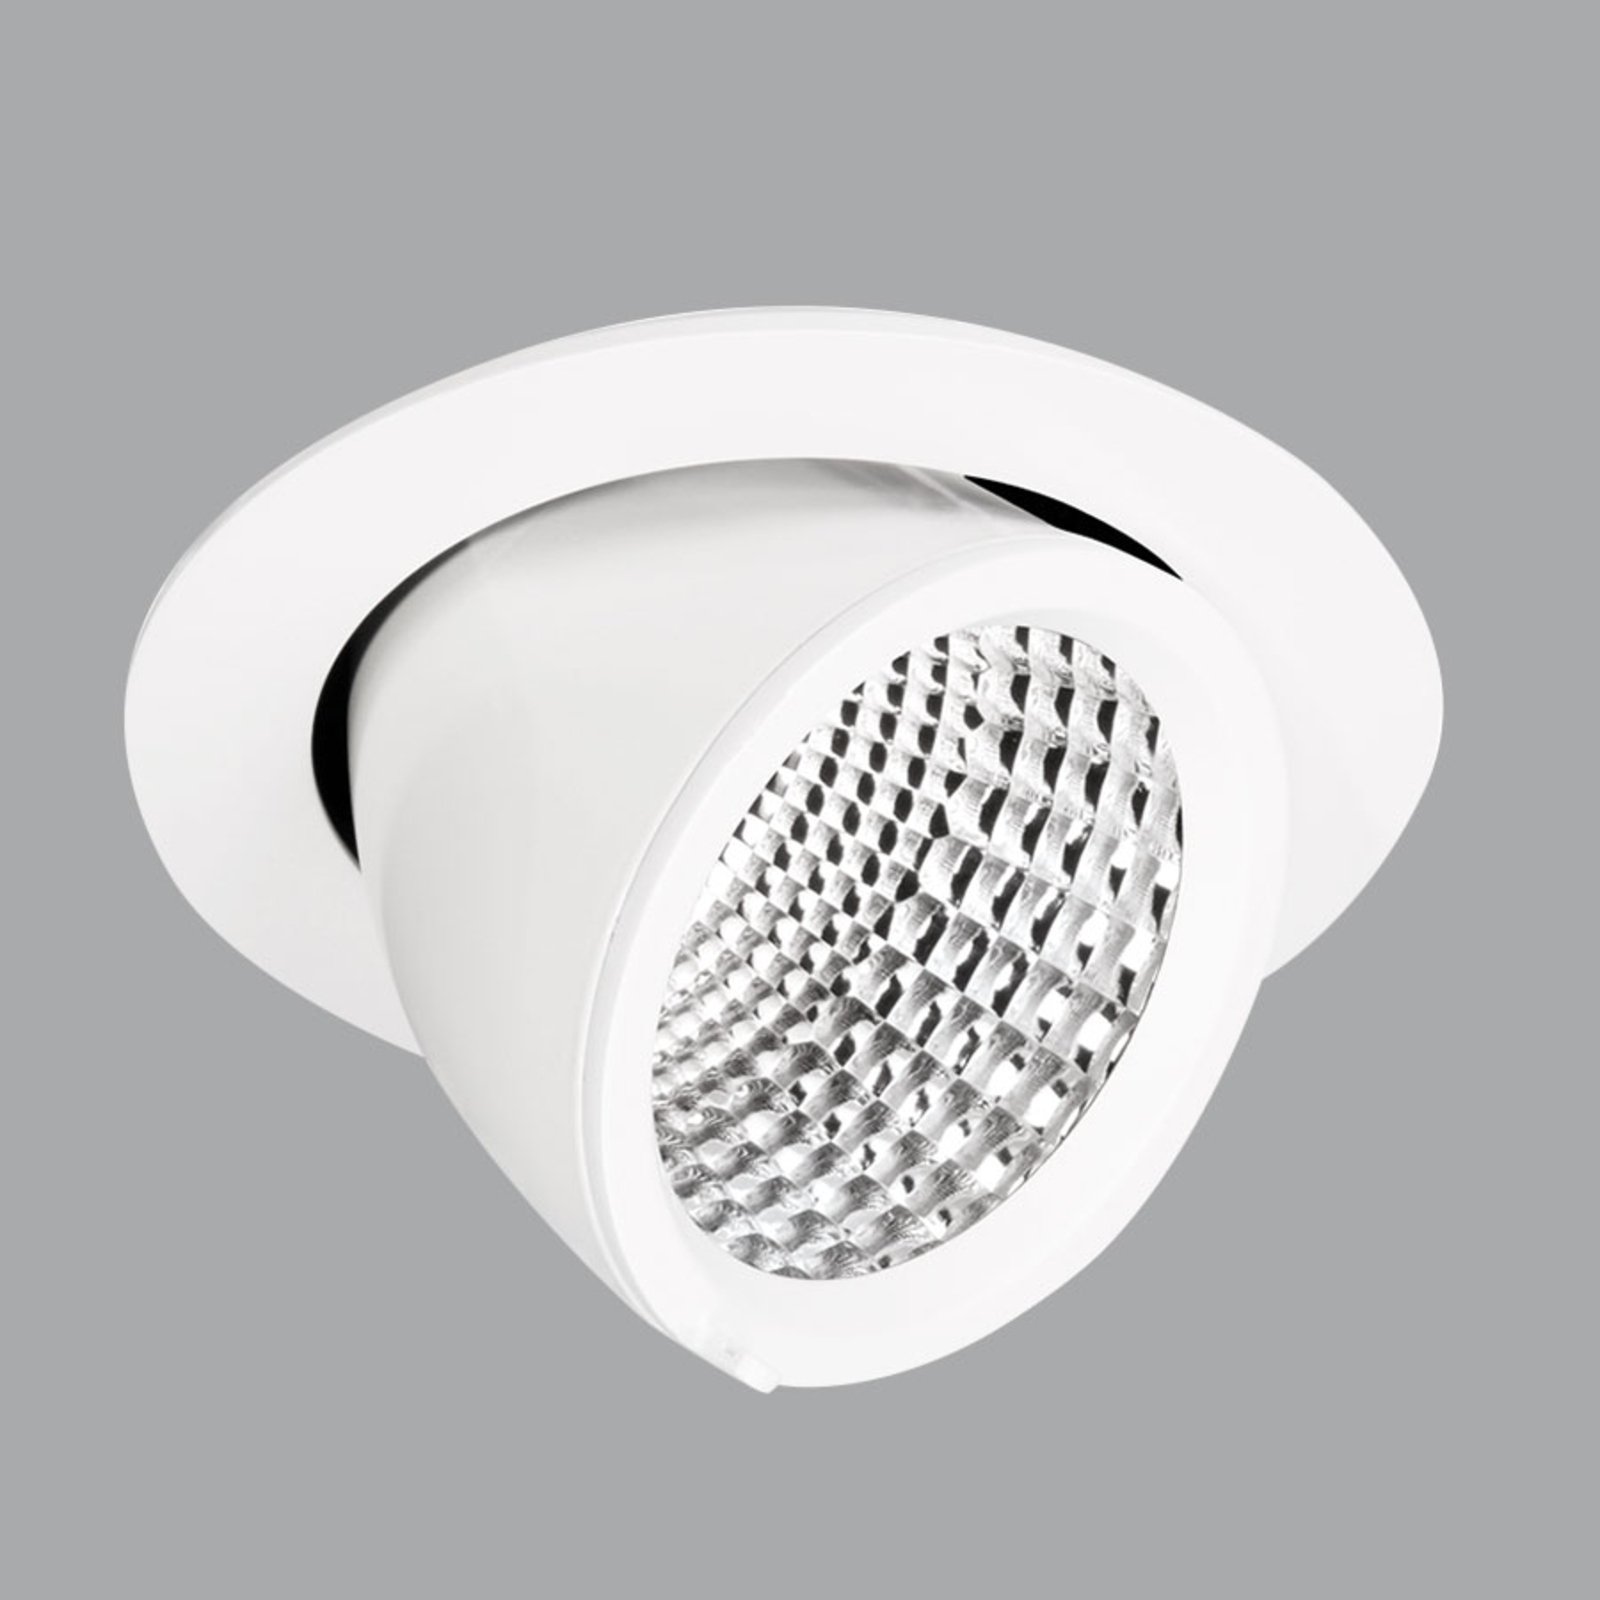 Baltos spalvos įleidžiamoji lempa EB433 LED potvynio reflektorius 3000K